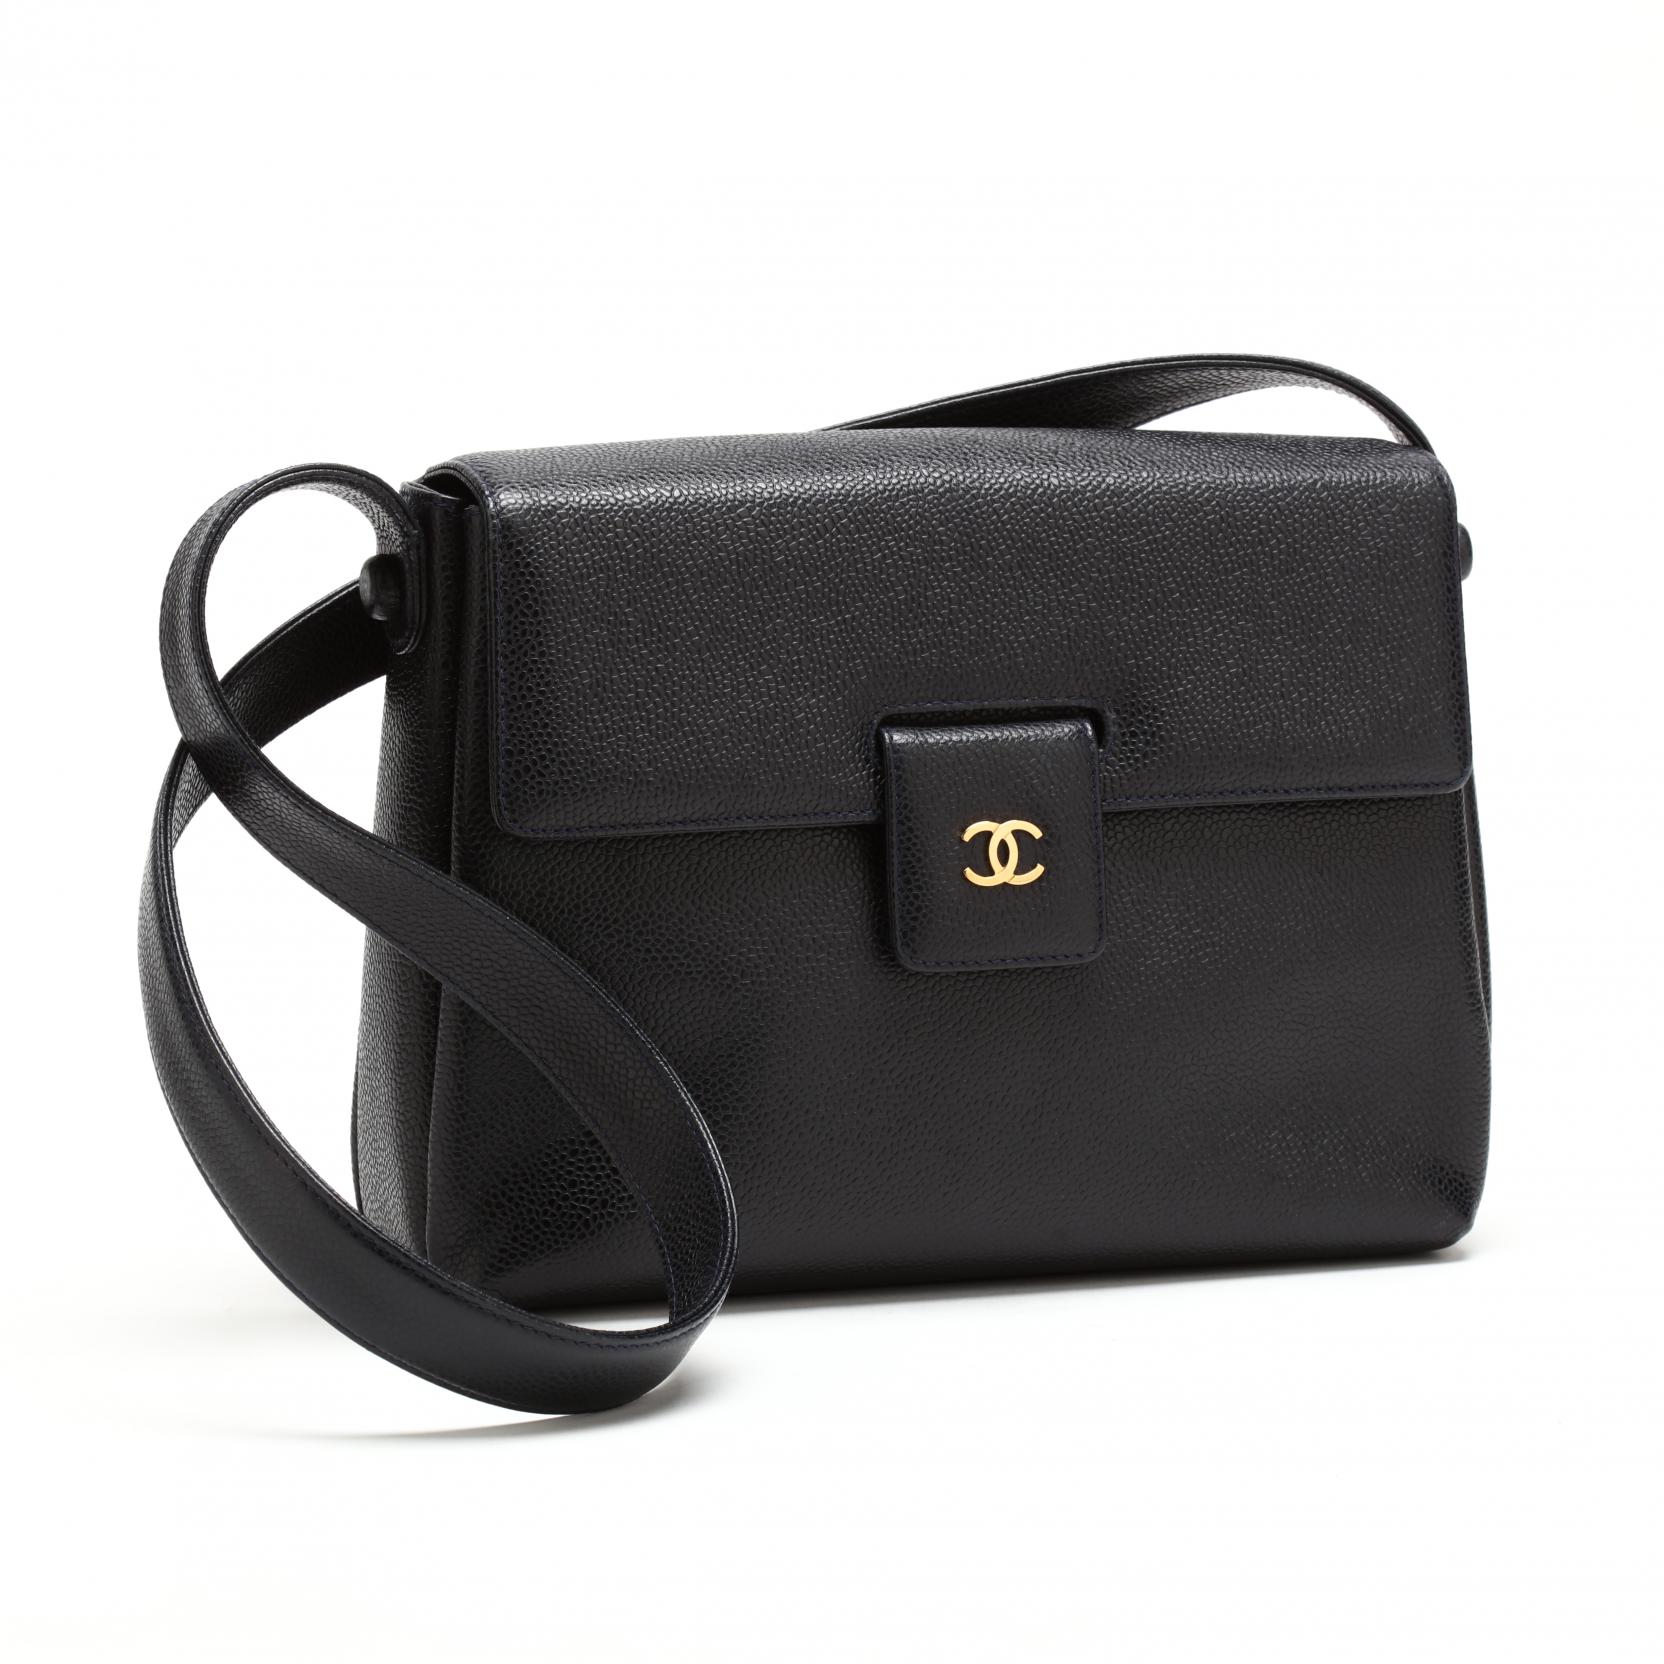 Vintage Caviar Leather Shoulder Bag, Chanel (Lot 108 - The